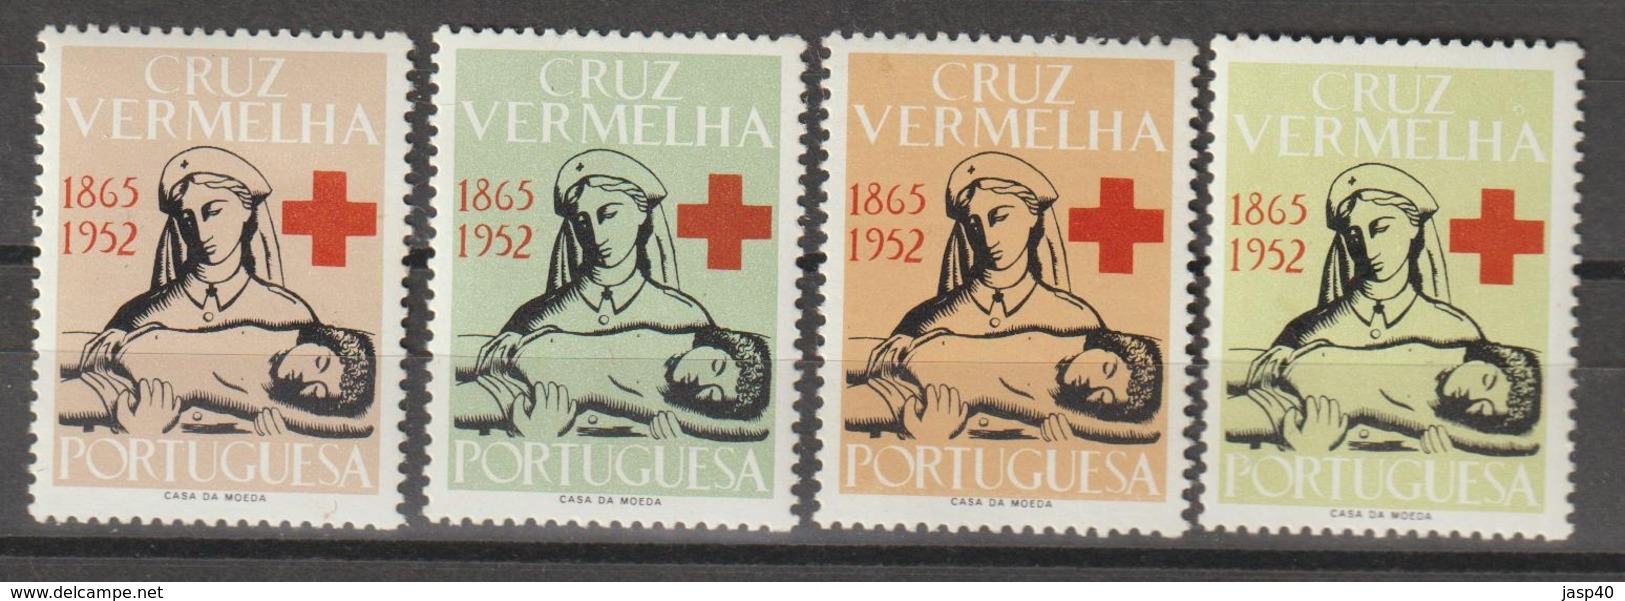 PORTUGAL - CRUZ VERMELHA EMISSÃO DE 1952 - Neufs